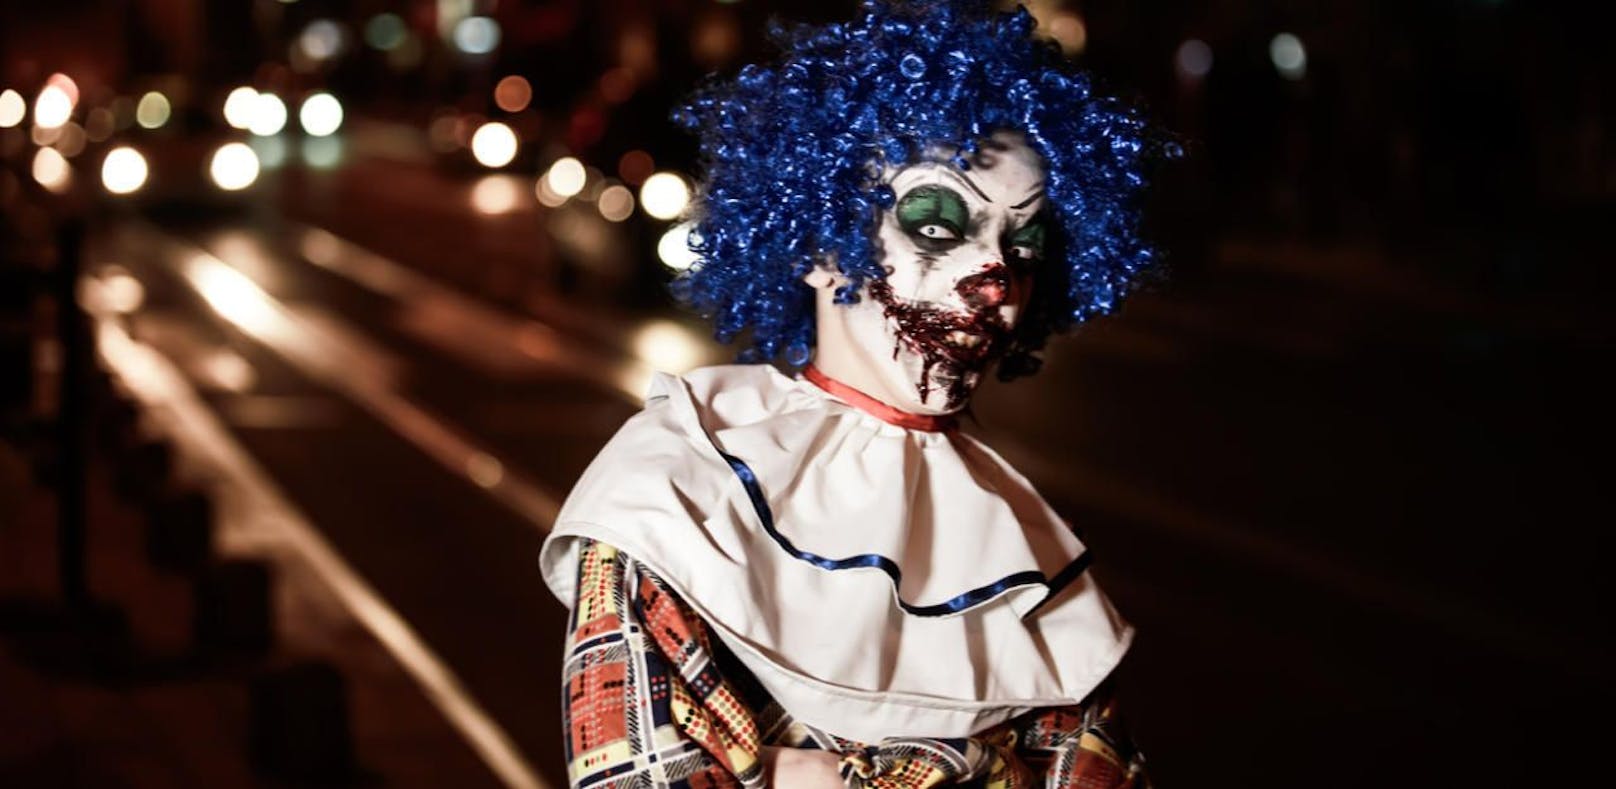 Der Horror-Clown wurde verletzt in ein Spital gebracht